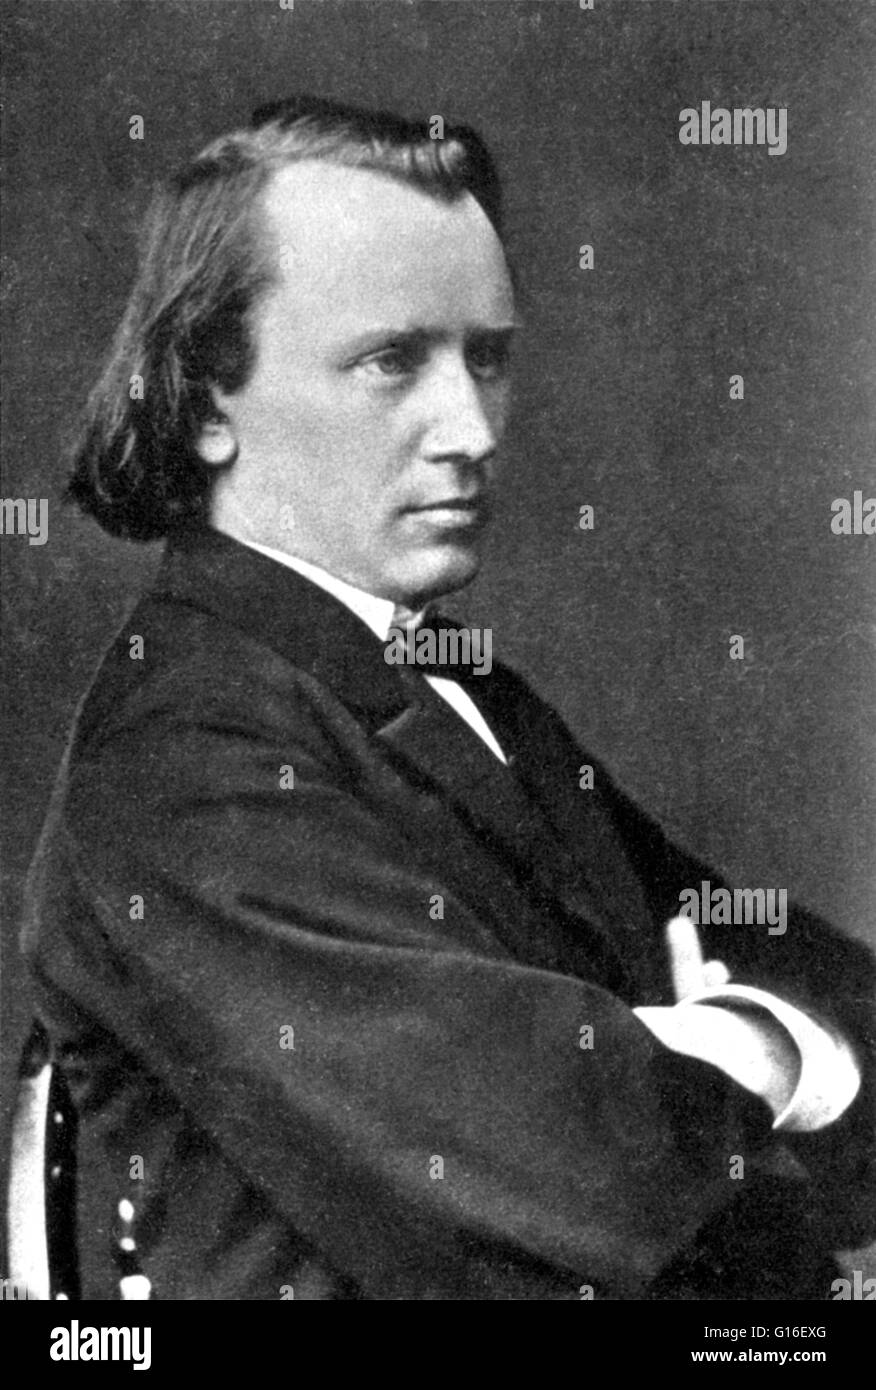 Johannes Brahms (17. Mai 1833 - 3. April 1897) war ein deutscher Komponist und Pianist und einer der führenden Musiker der Romantik. Brahms verbrachte einen Großteil seines Berufslebens in Wien, wo er ein Führer des Musiklebens war. In seinem li Stockfoto